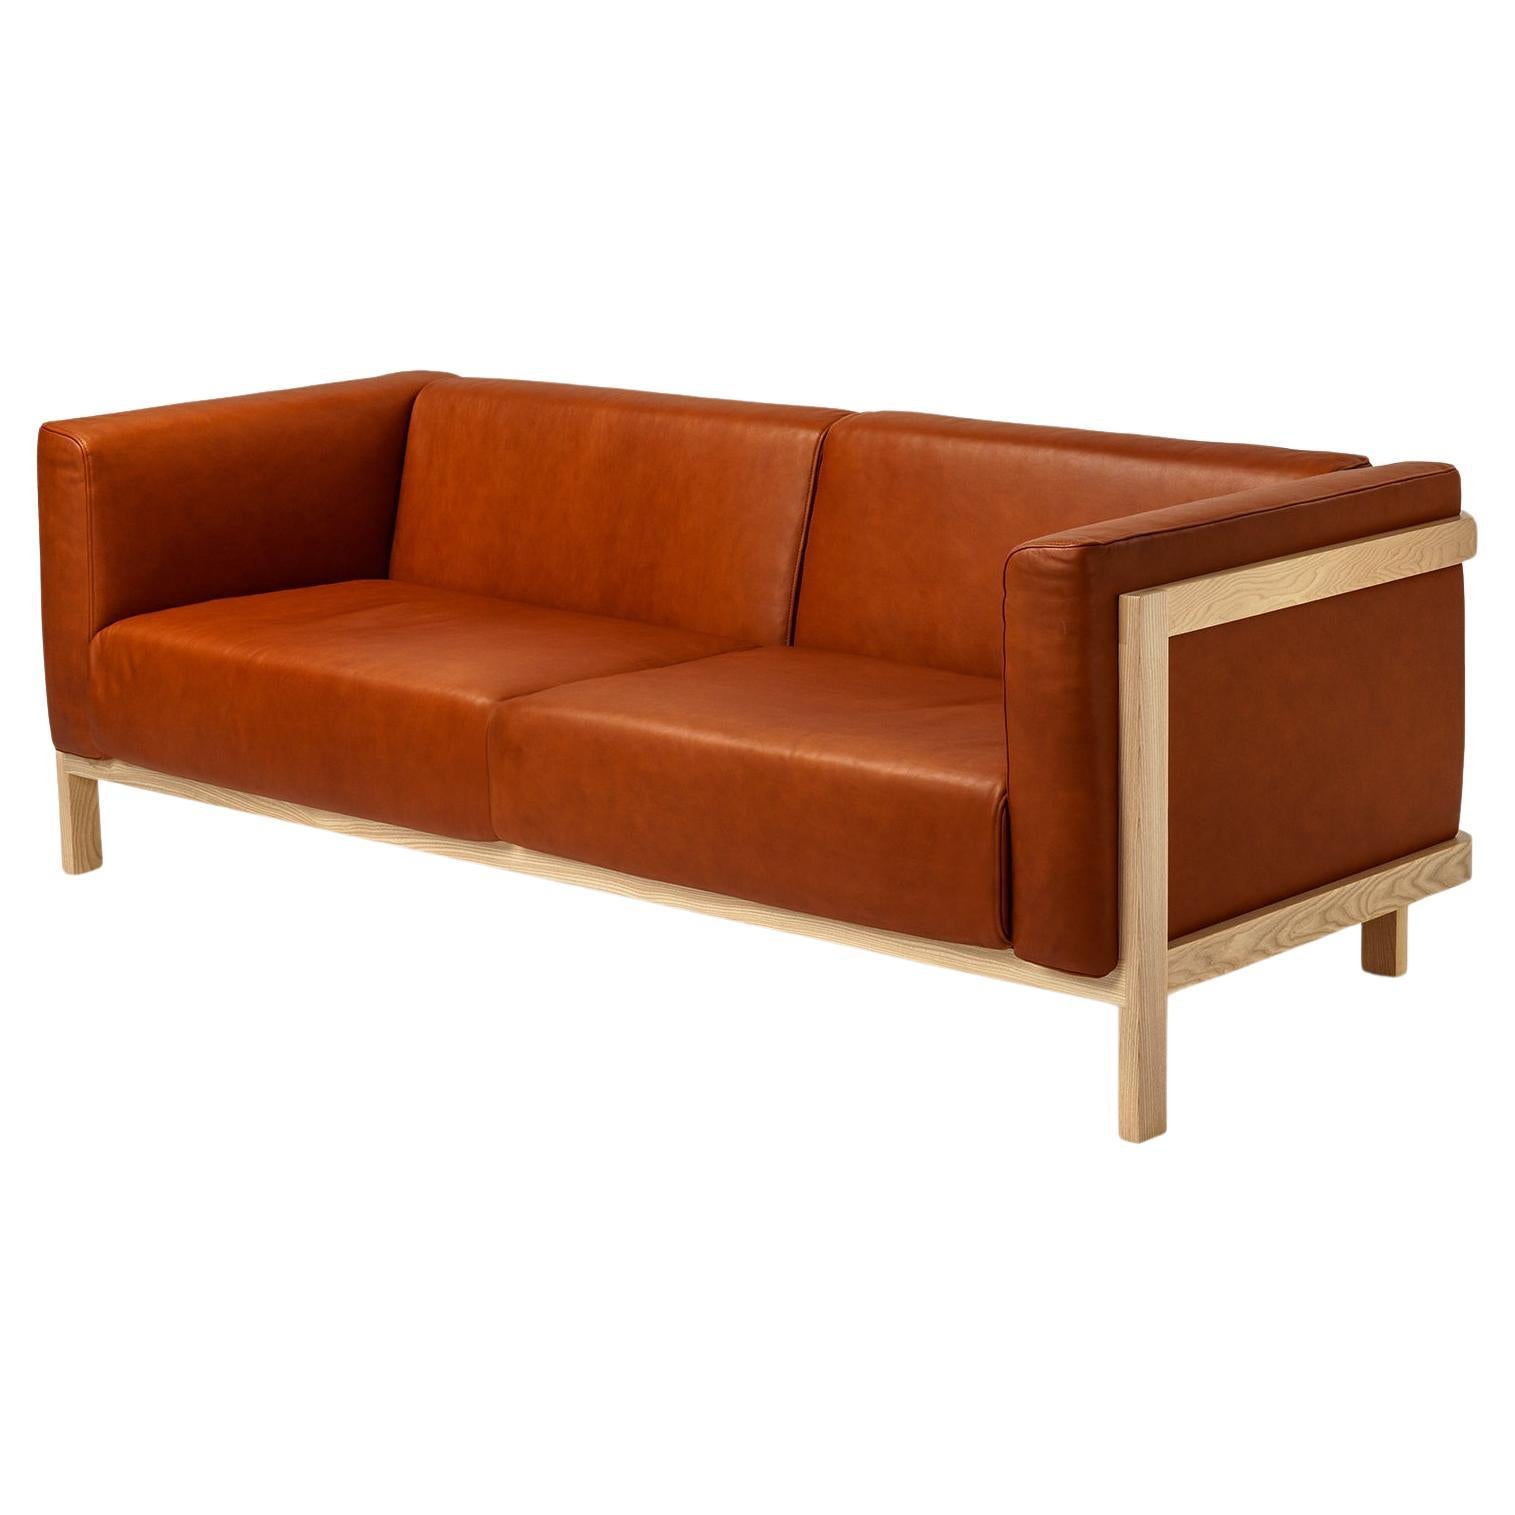 Minimalistisches dreisitziges Sofa aus Eschenholz – Lederpolsterung